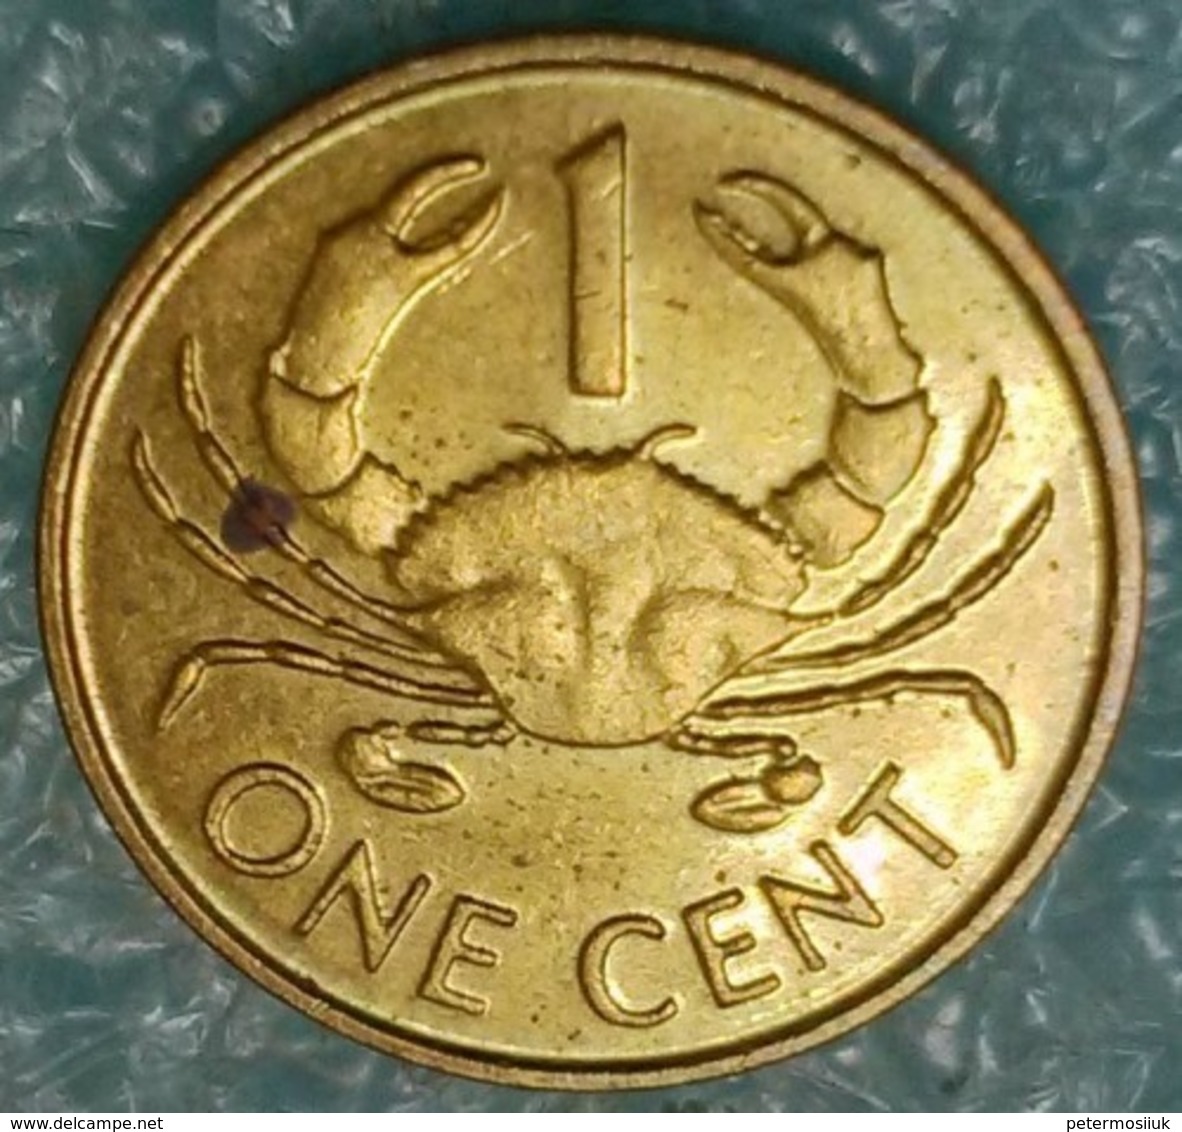 Seychelles 1 Cent, 1990 -4588 - Seychelles